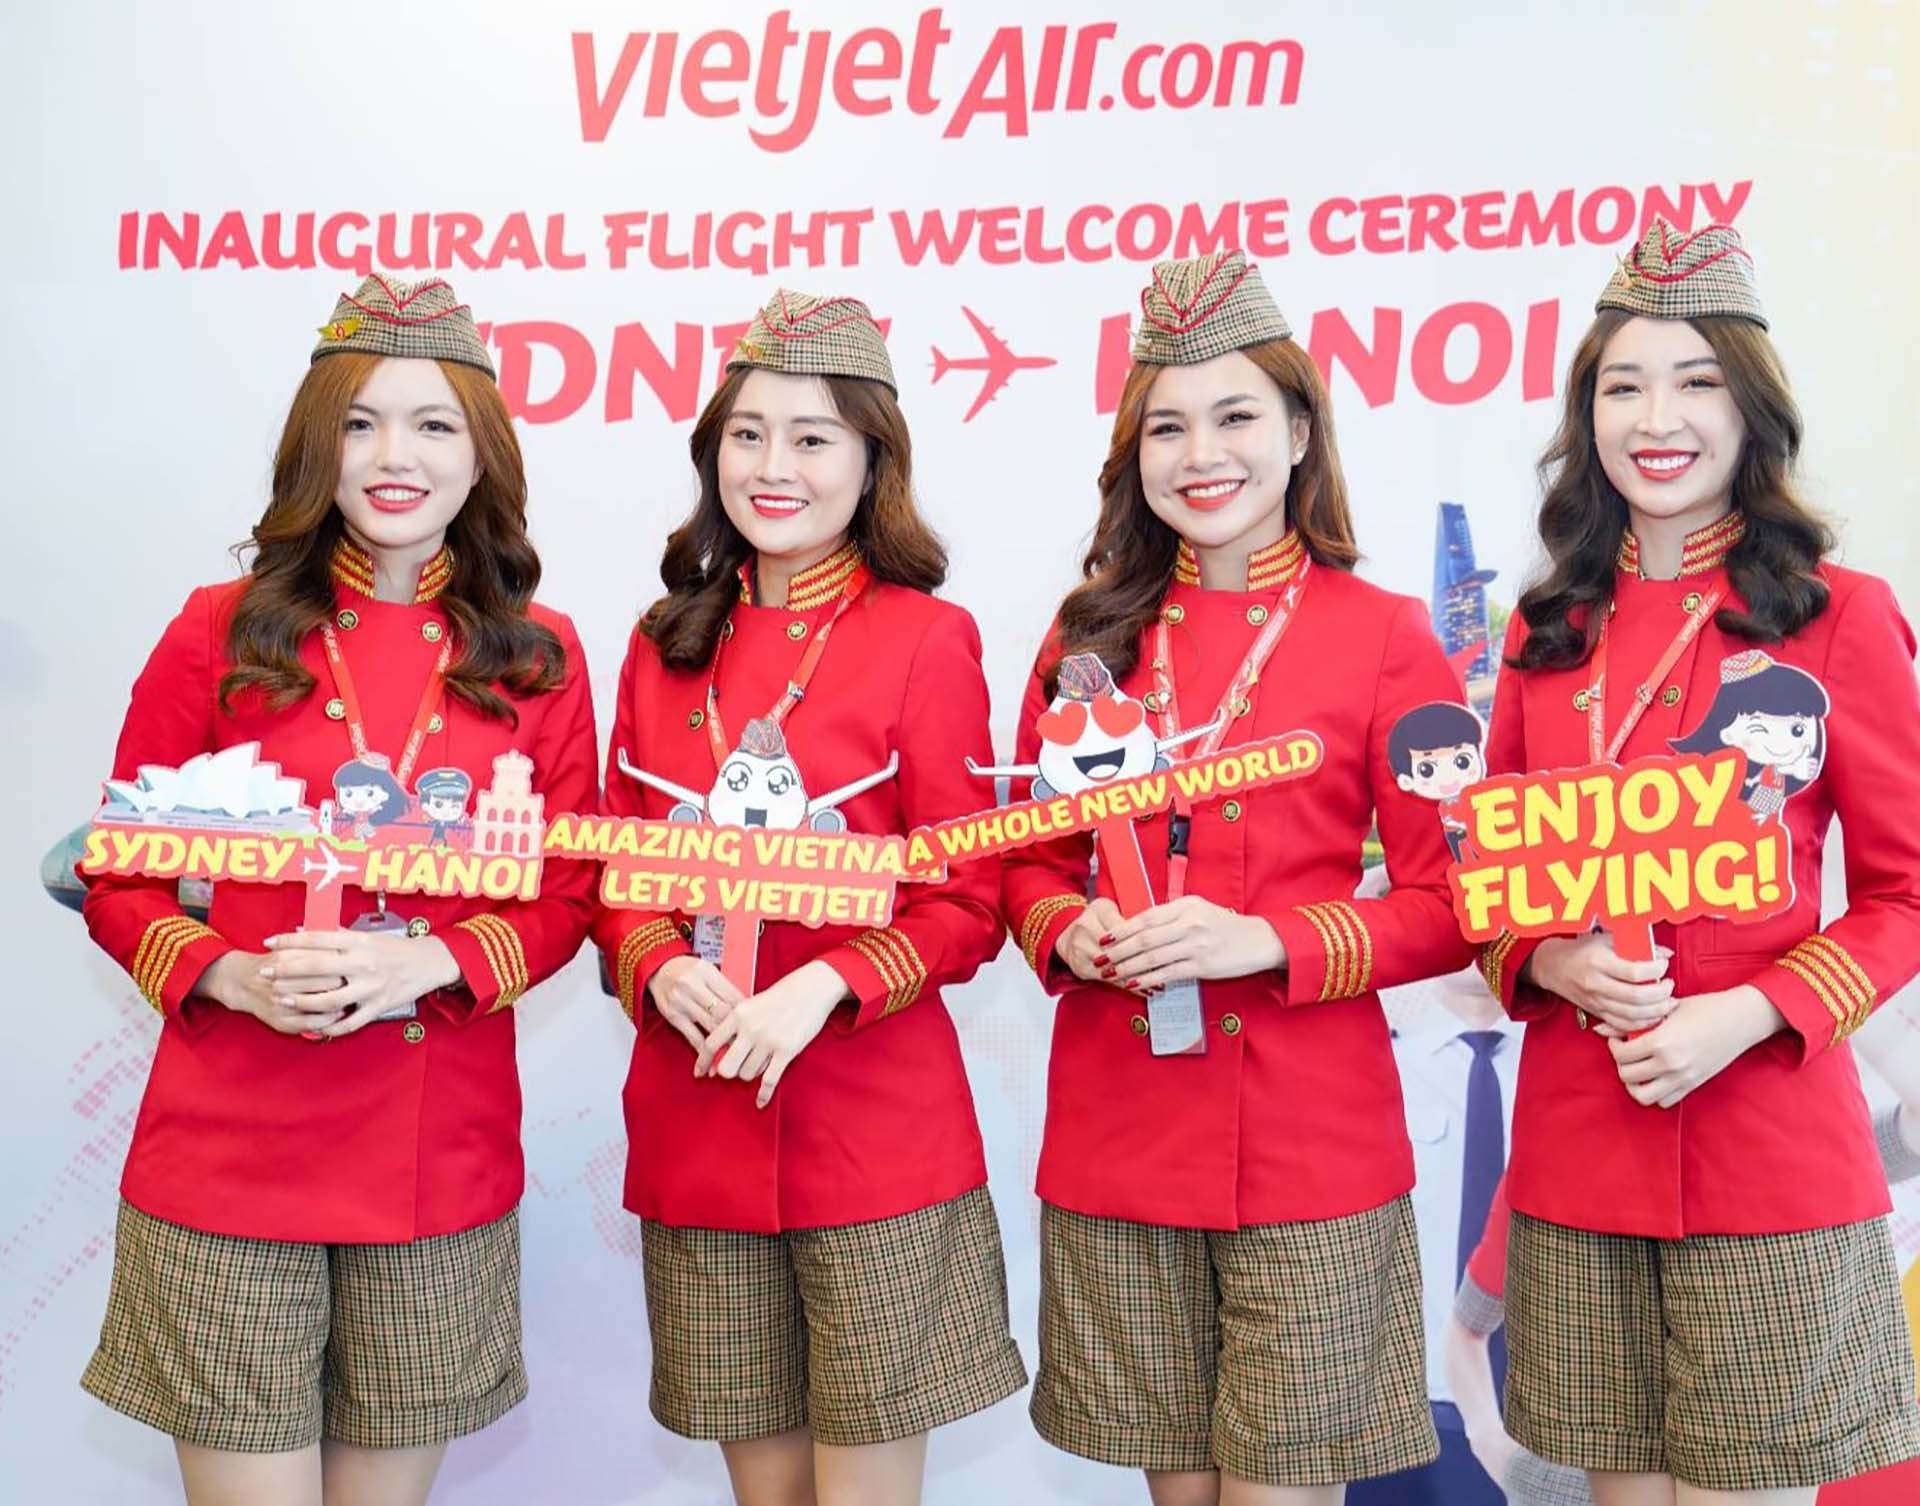 Các tiếp viên hàng không Vietjet xinh đẹp, rạng rỡ chào đón hành khách trên đường bay mới Sydney - Hà Nội